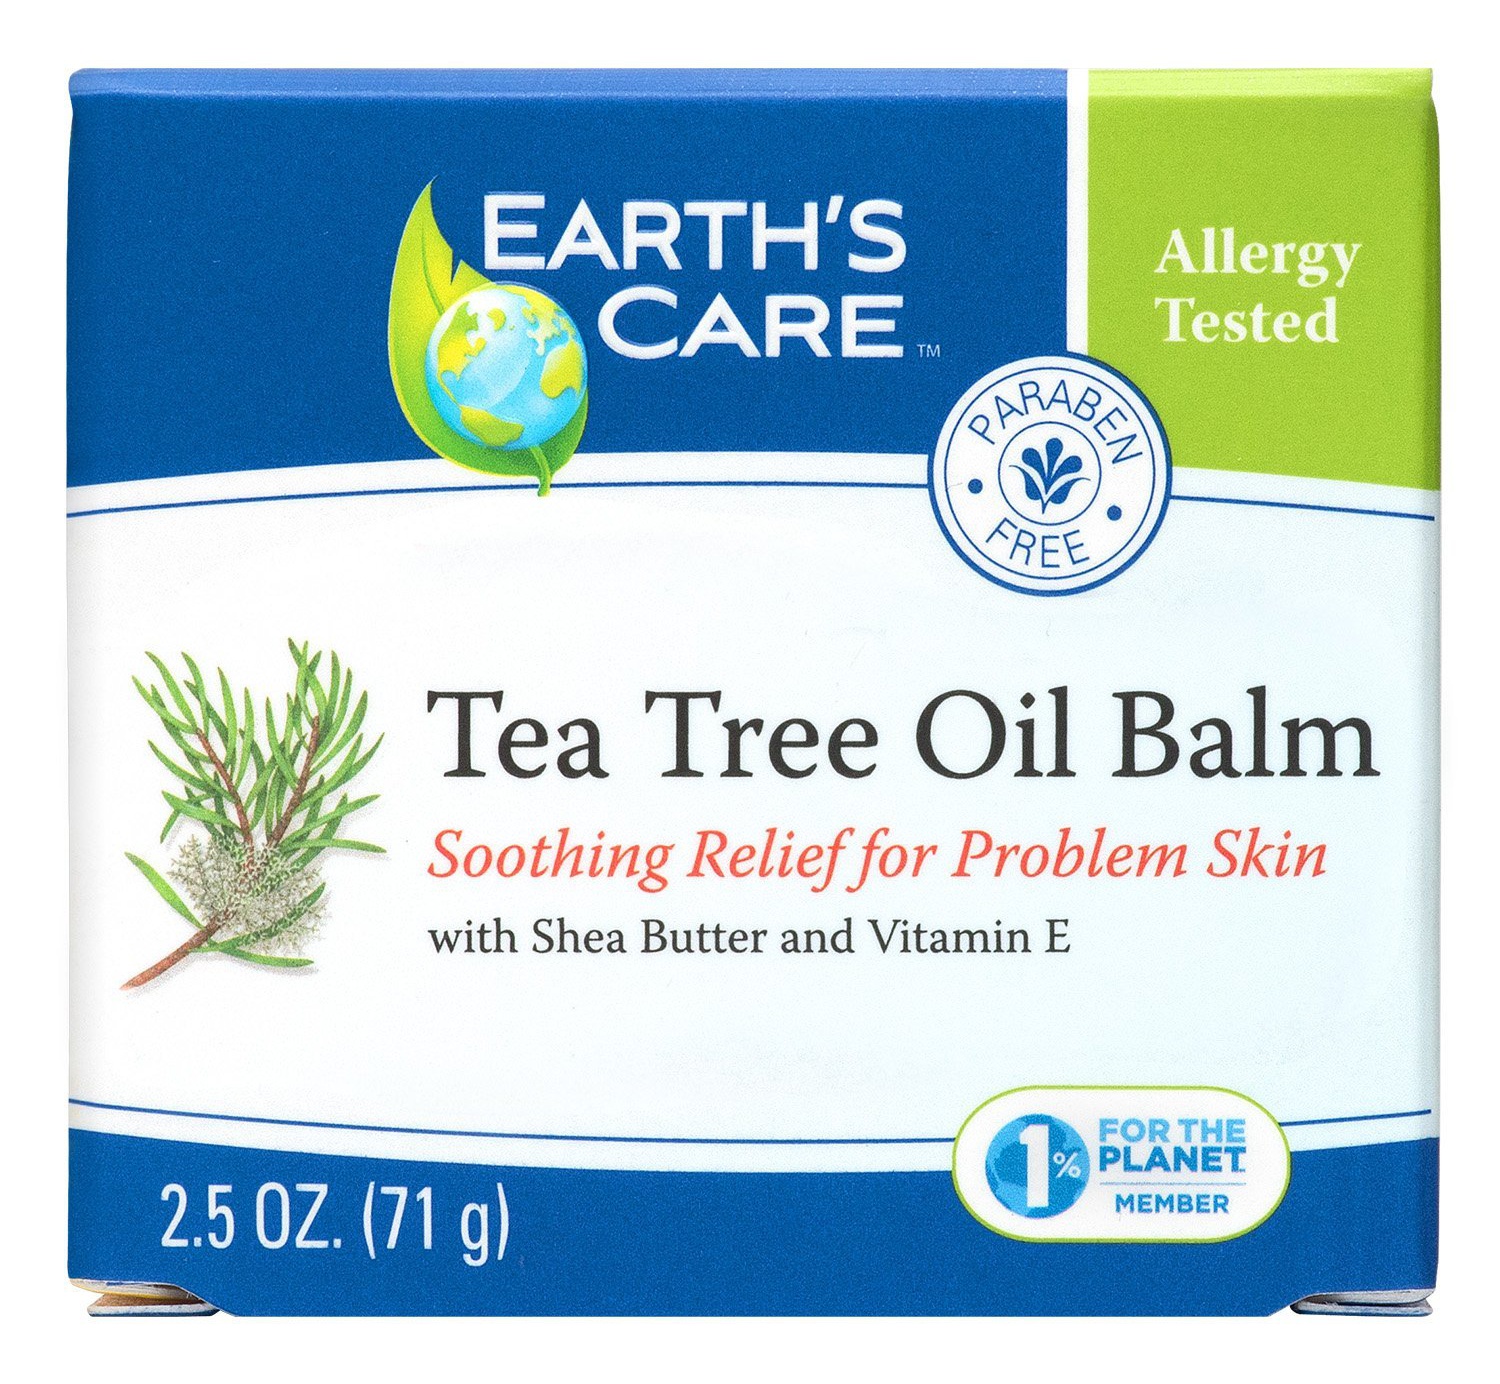 Earth’s Care Tea Tree Oil Balm